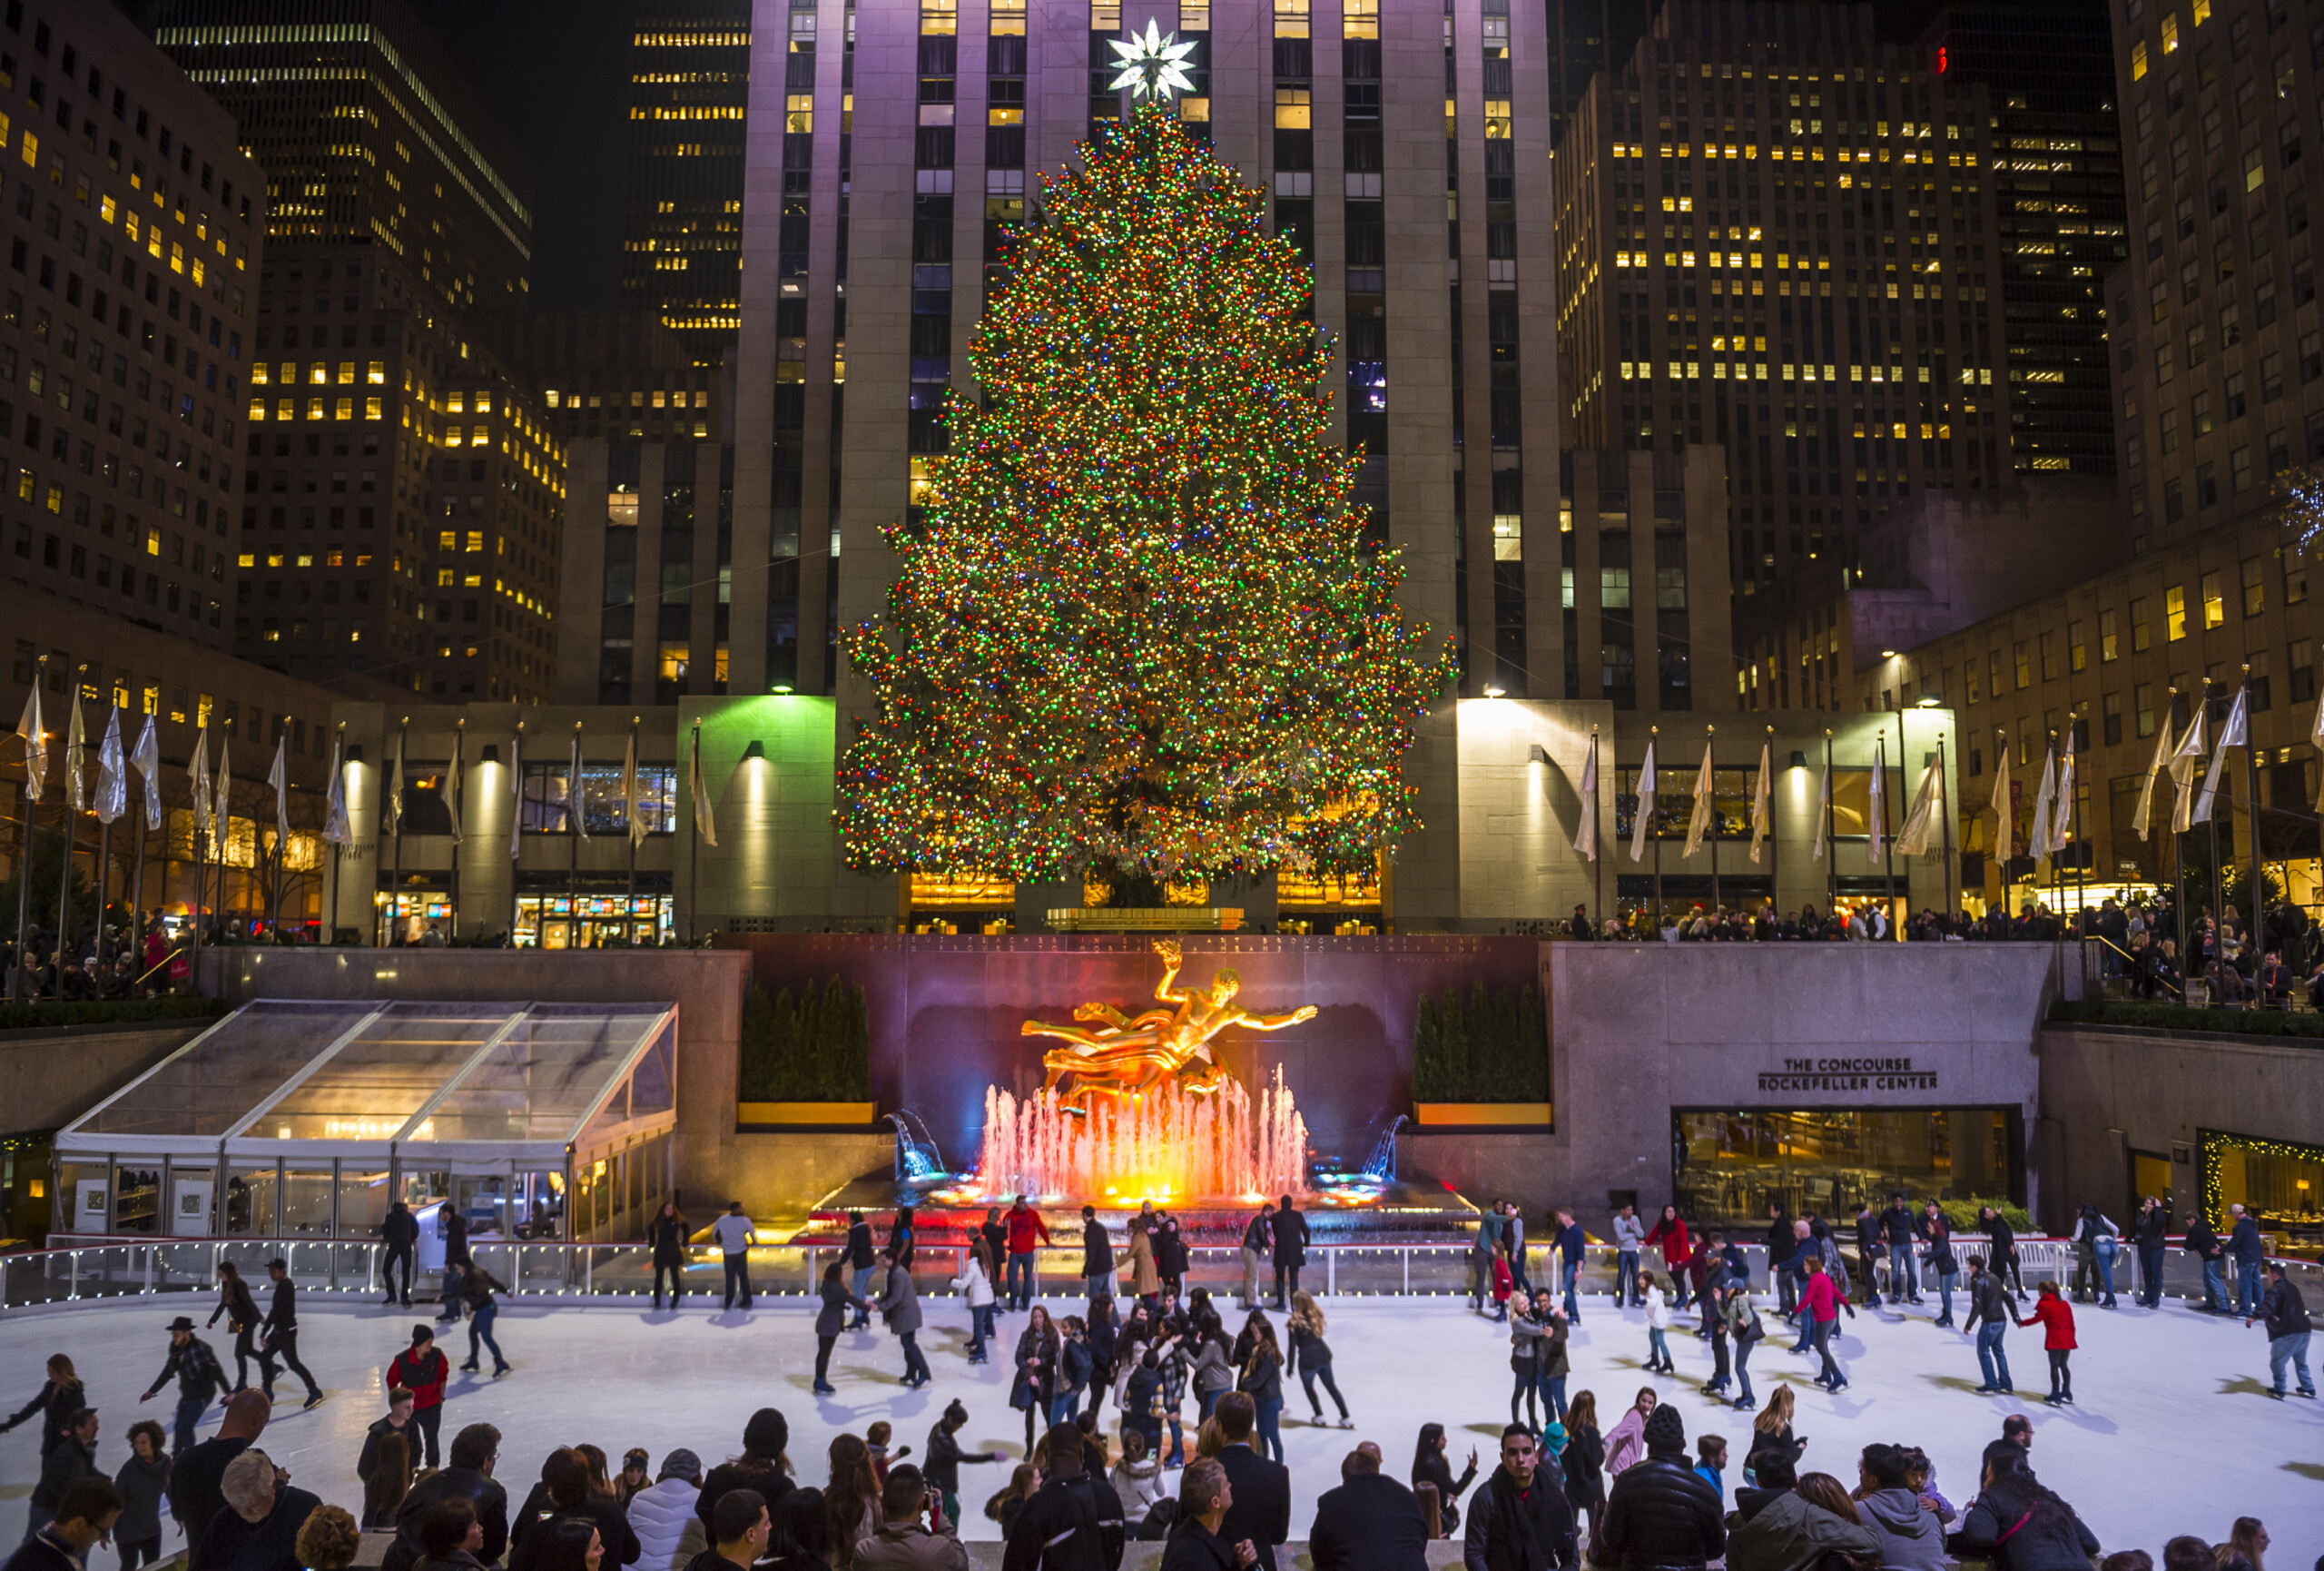 NEW YORK CITY - 10 grudnia 2015: Łyżwiarze wypełniają lodowisko pod choinką Rockefeller Center, licencja: shutterstock/By